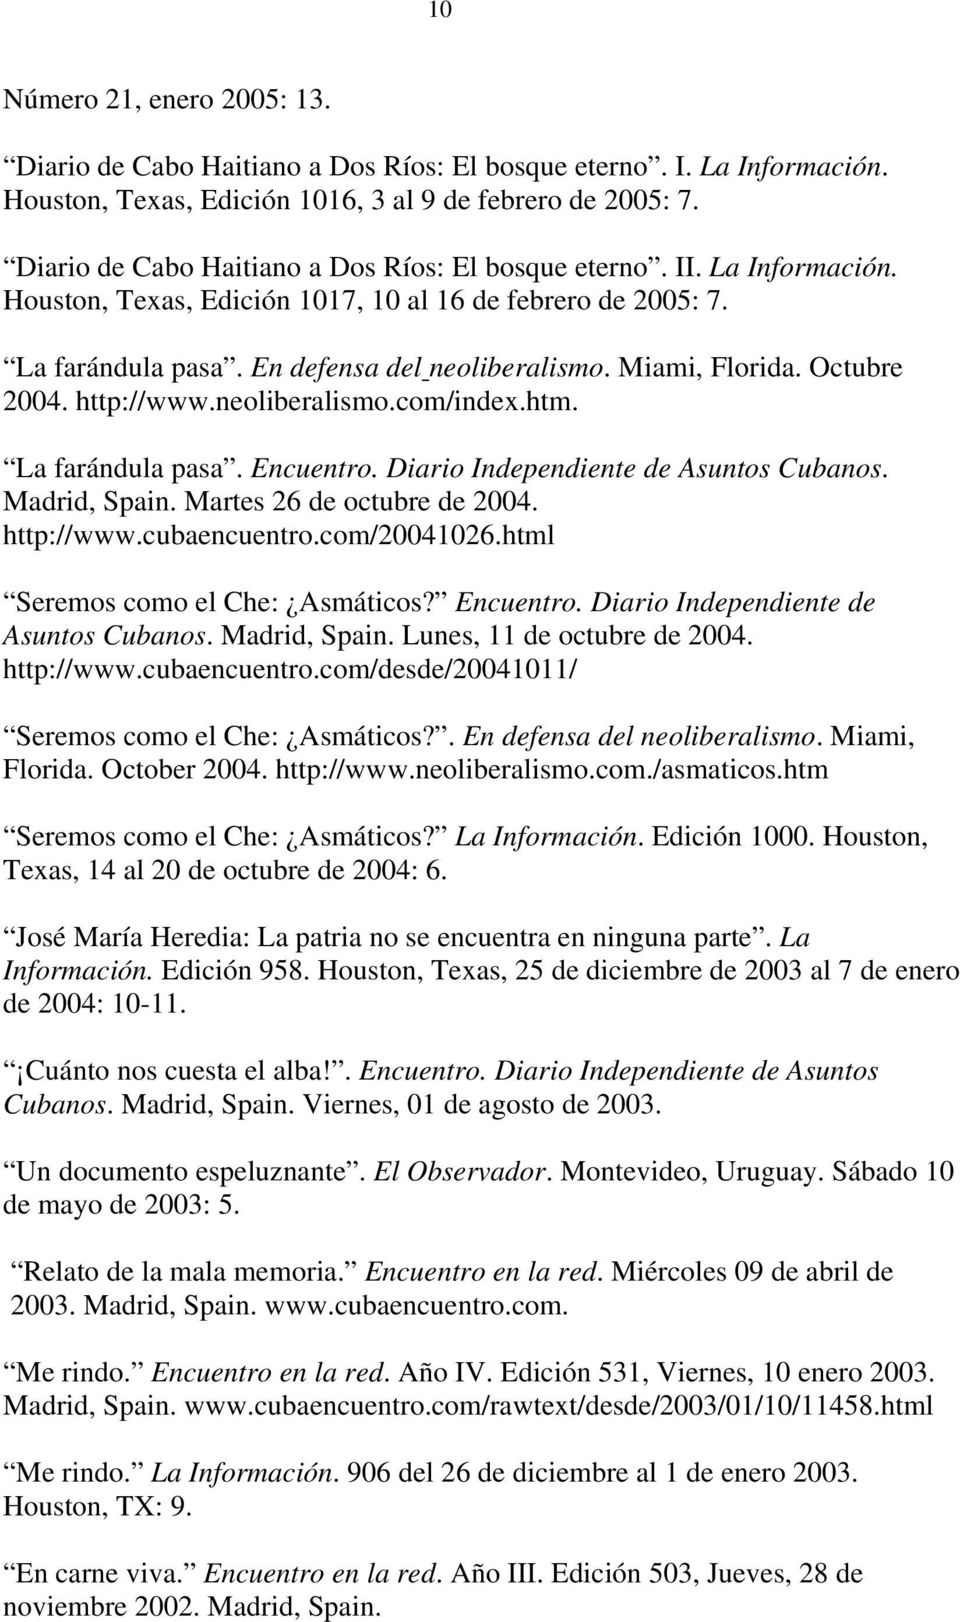 Miami, Florida. Octubre 2004. http://www.neoliberalismo.com/index.htm. La farándula pasa. Encuentro. Diario Independiente de Asuntos Cubanos. Madrid, Spain. Martes 26 de octubre de 2004. http://www.cubaencuentro.